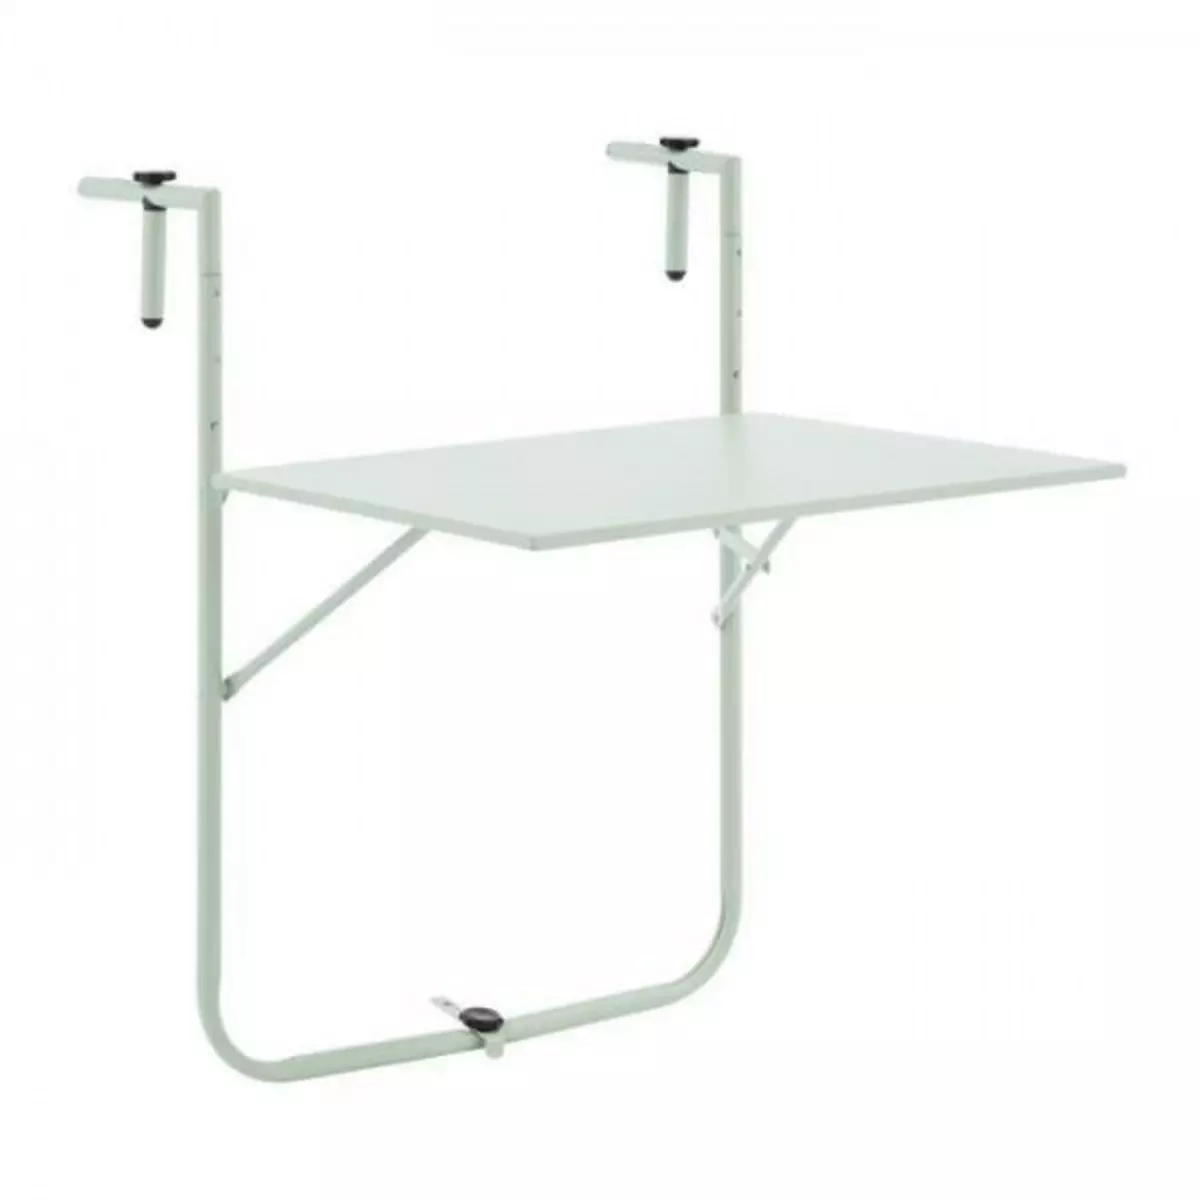 MARKET24 Table de balcon rabattable - Acier - 60 x 75 x 82-92 cm - Vert